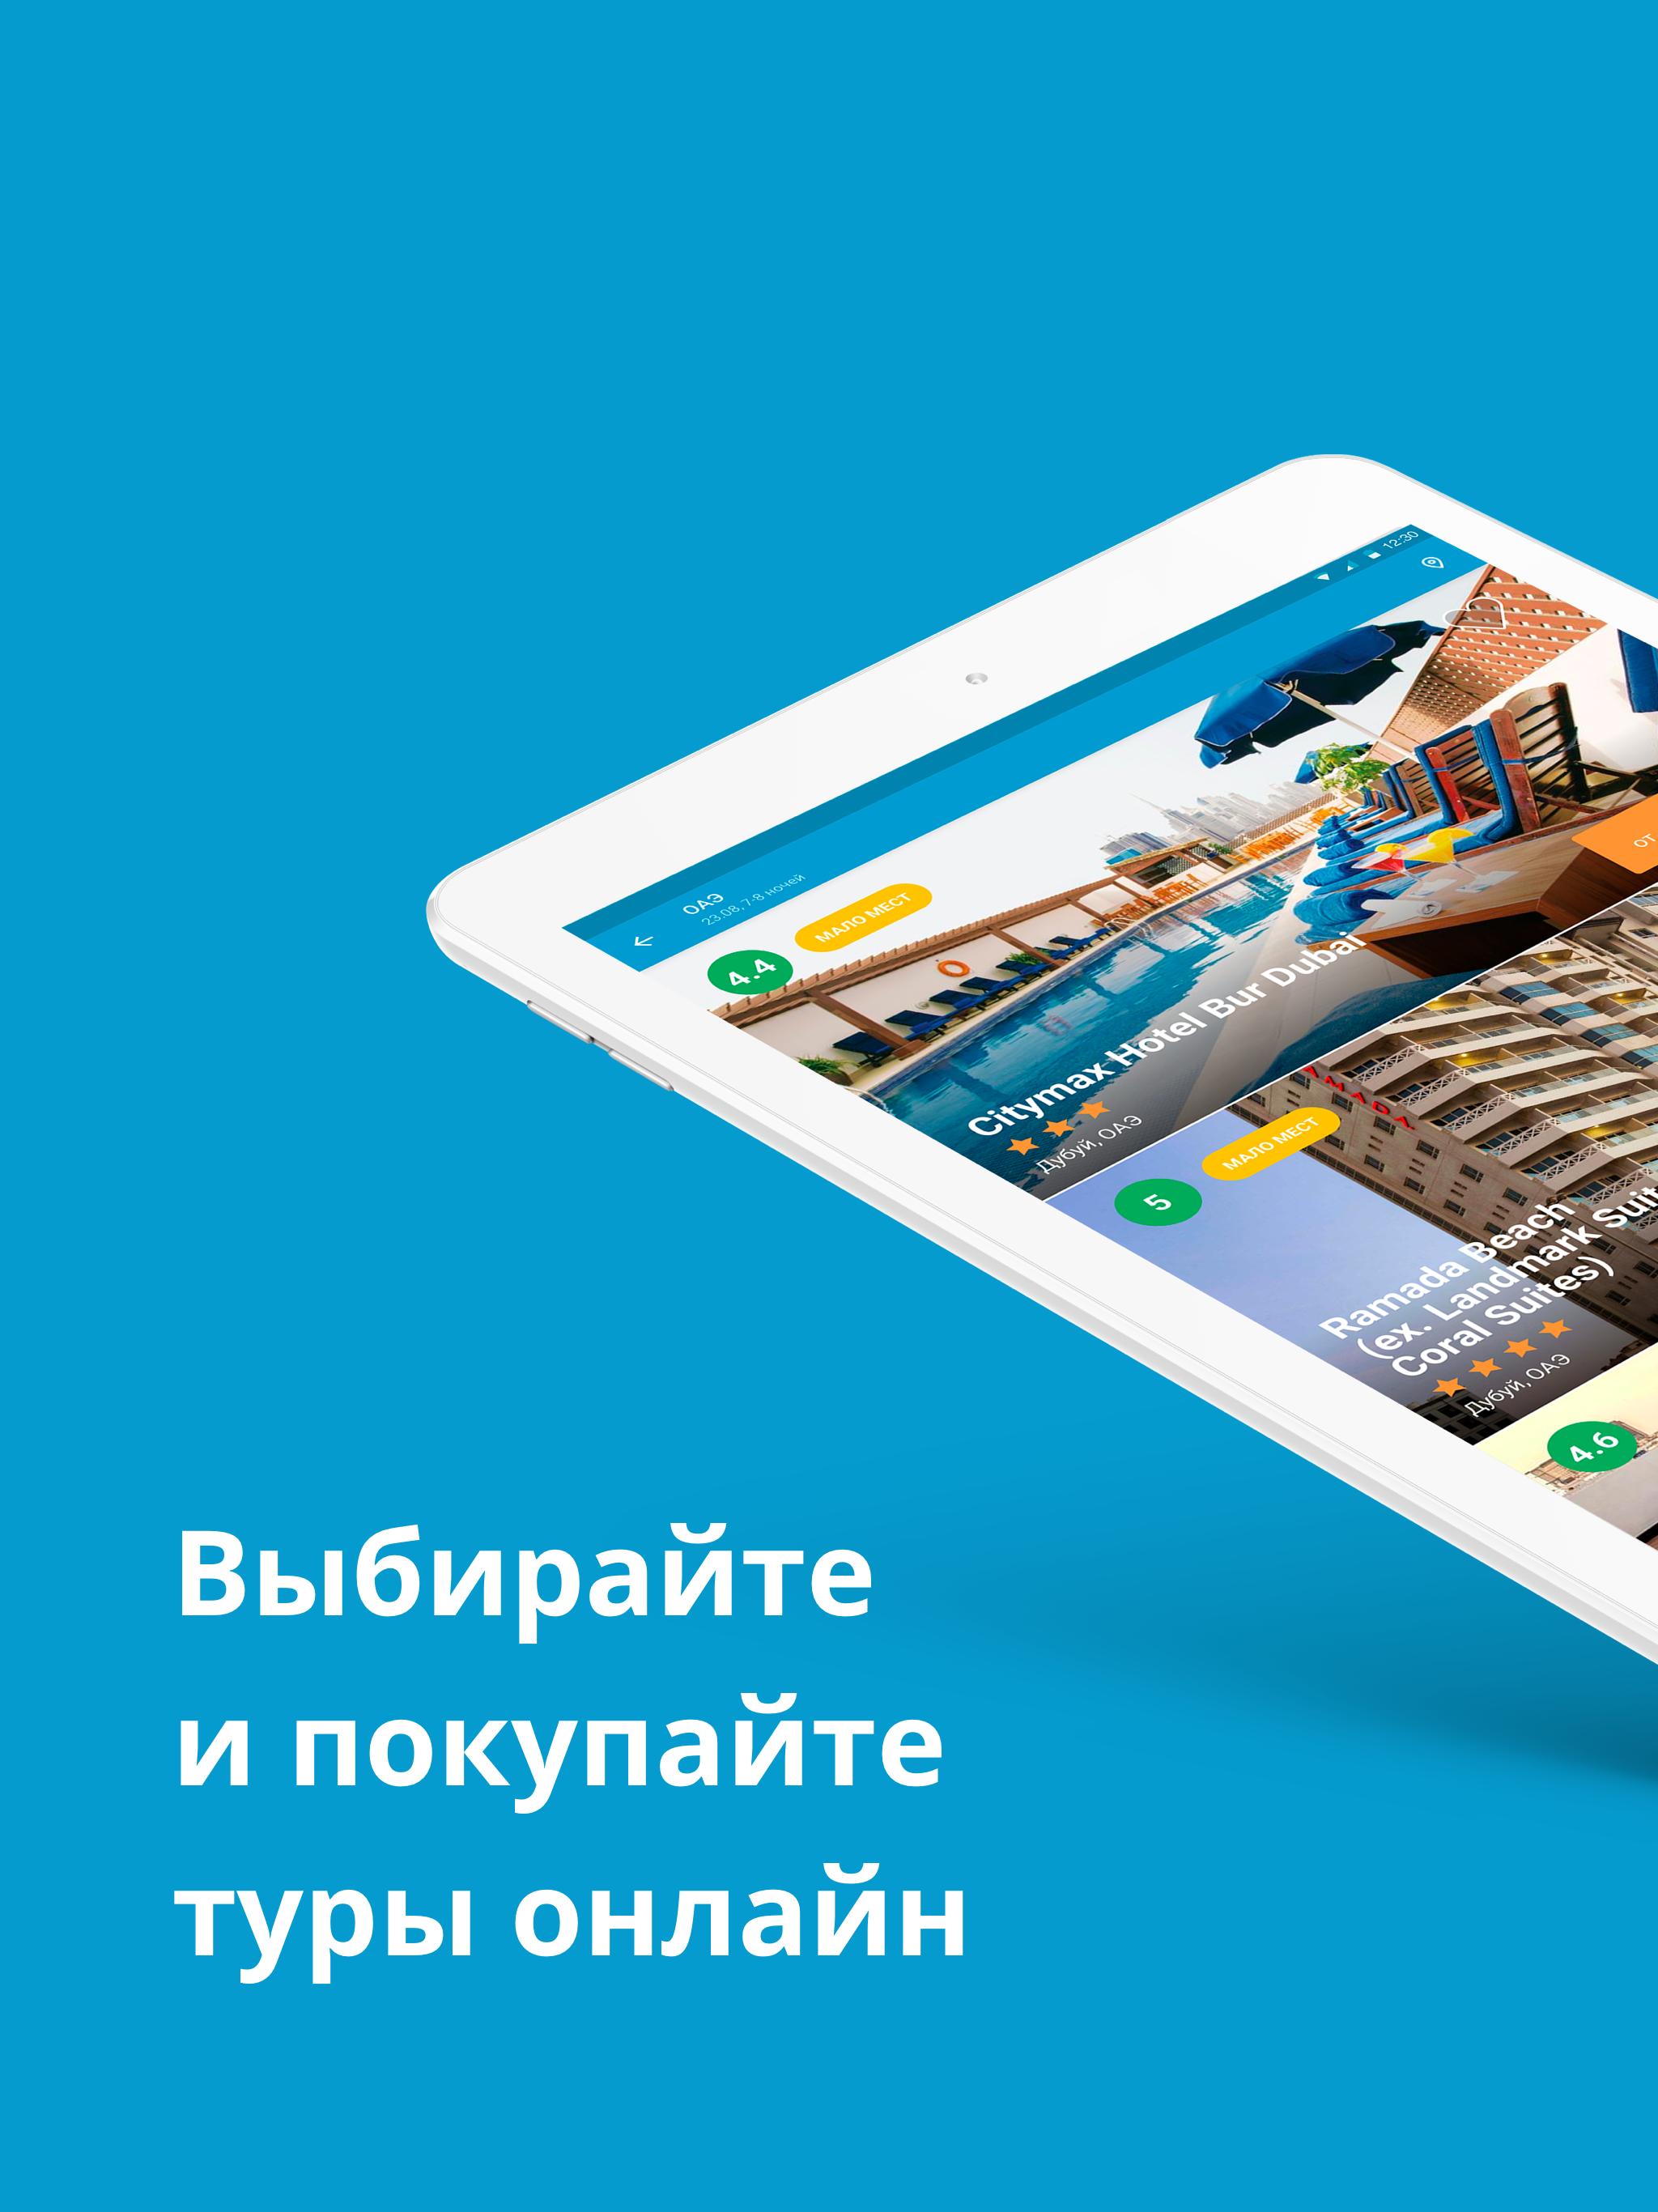 Travelata.ru Все горящие туры и путевки онлайн 3.6.7 Screenshot 11